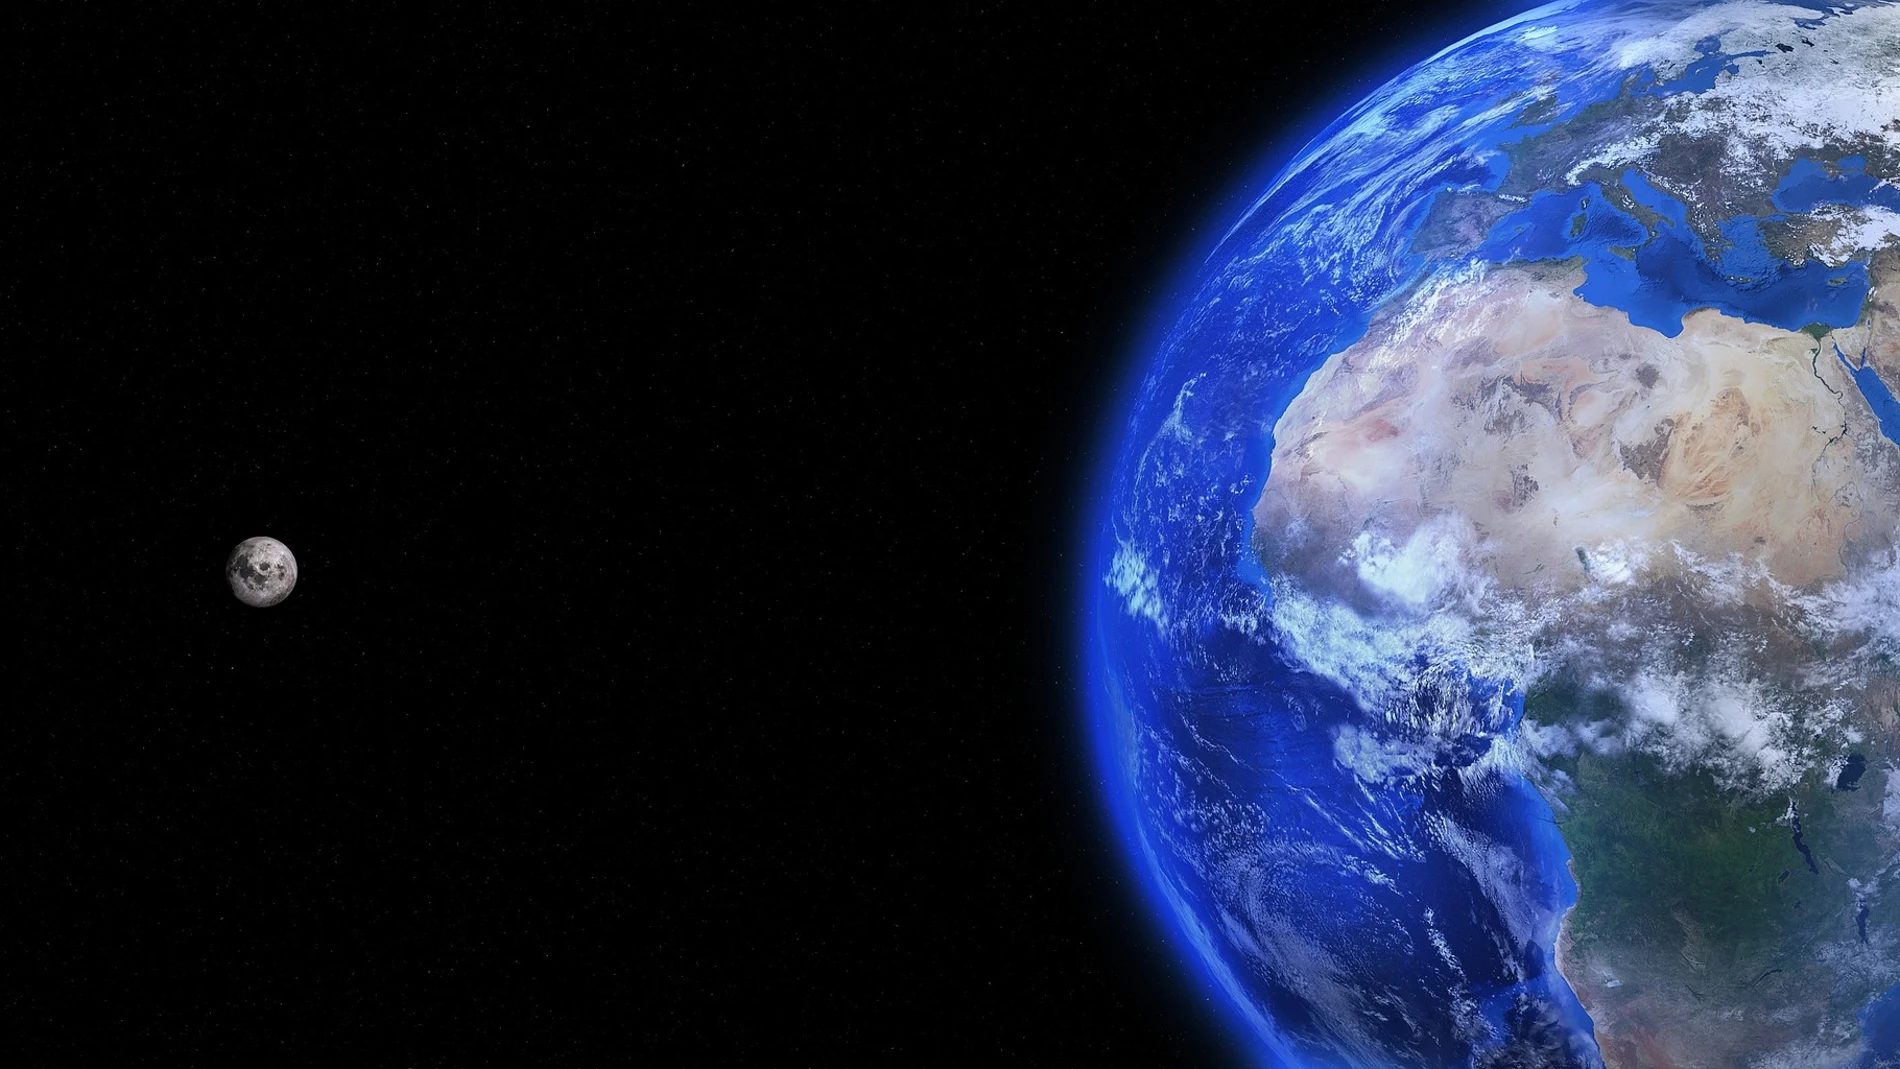 Hay menos oxígeno disponible debido a la desaceleración de la rotación de La Tierra, según un estudio